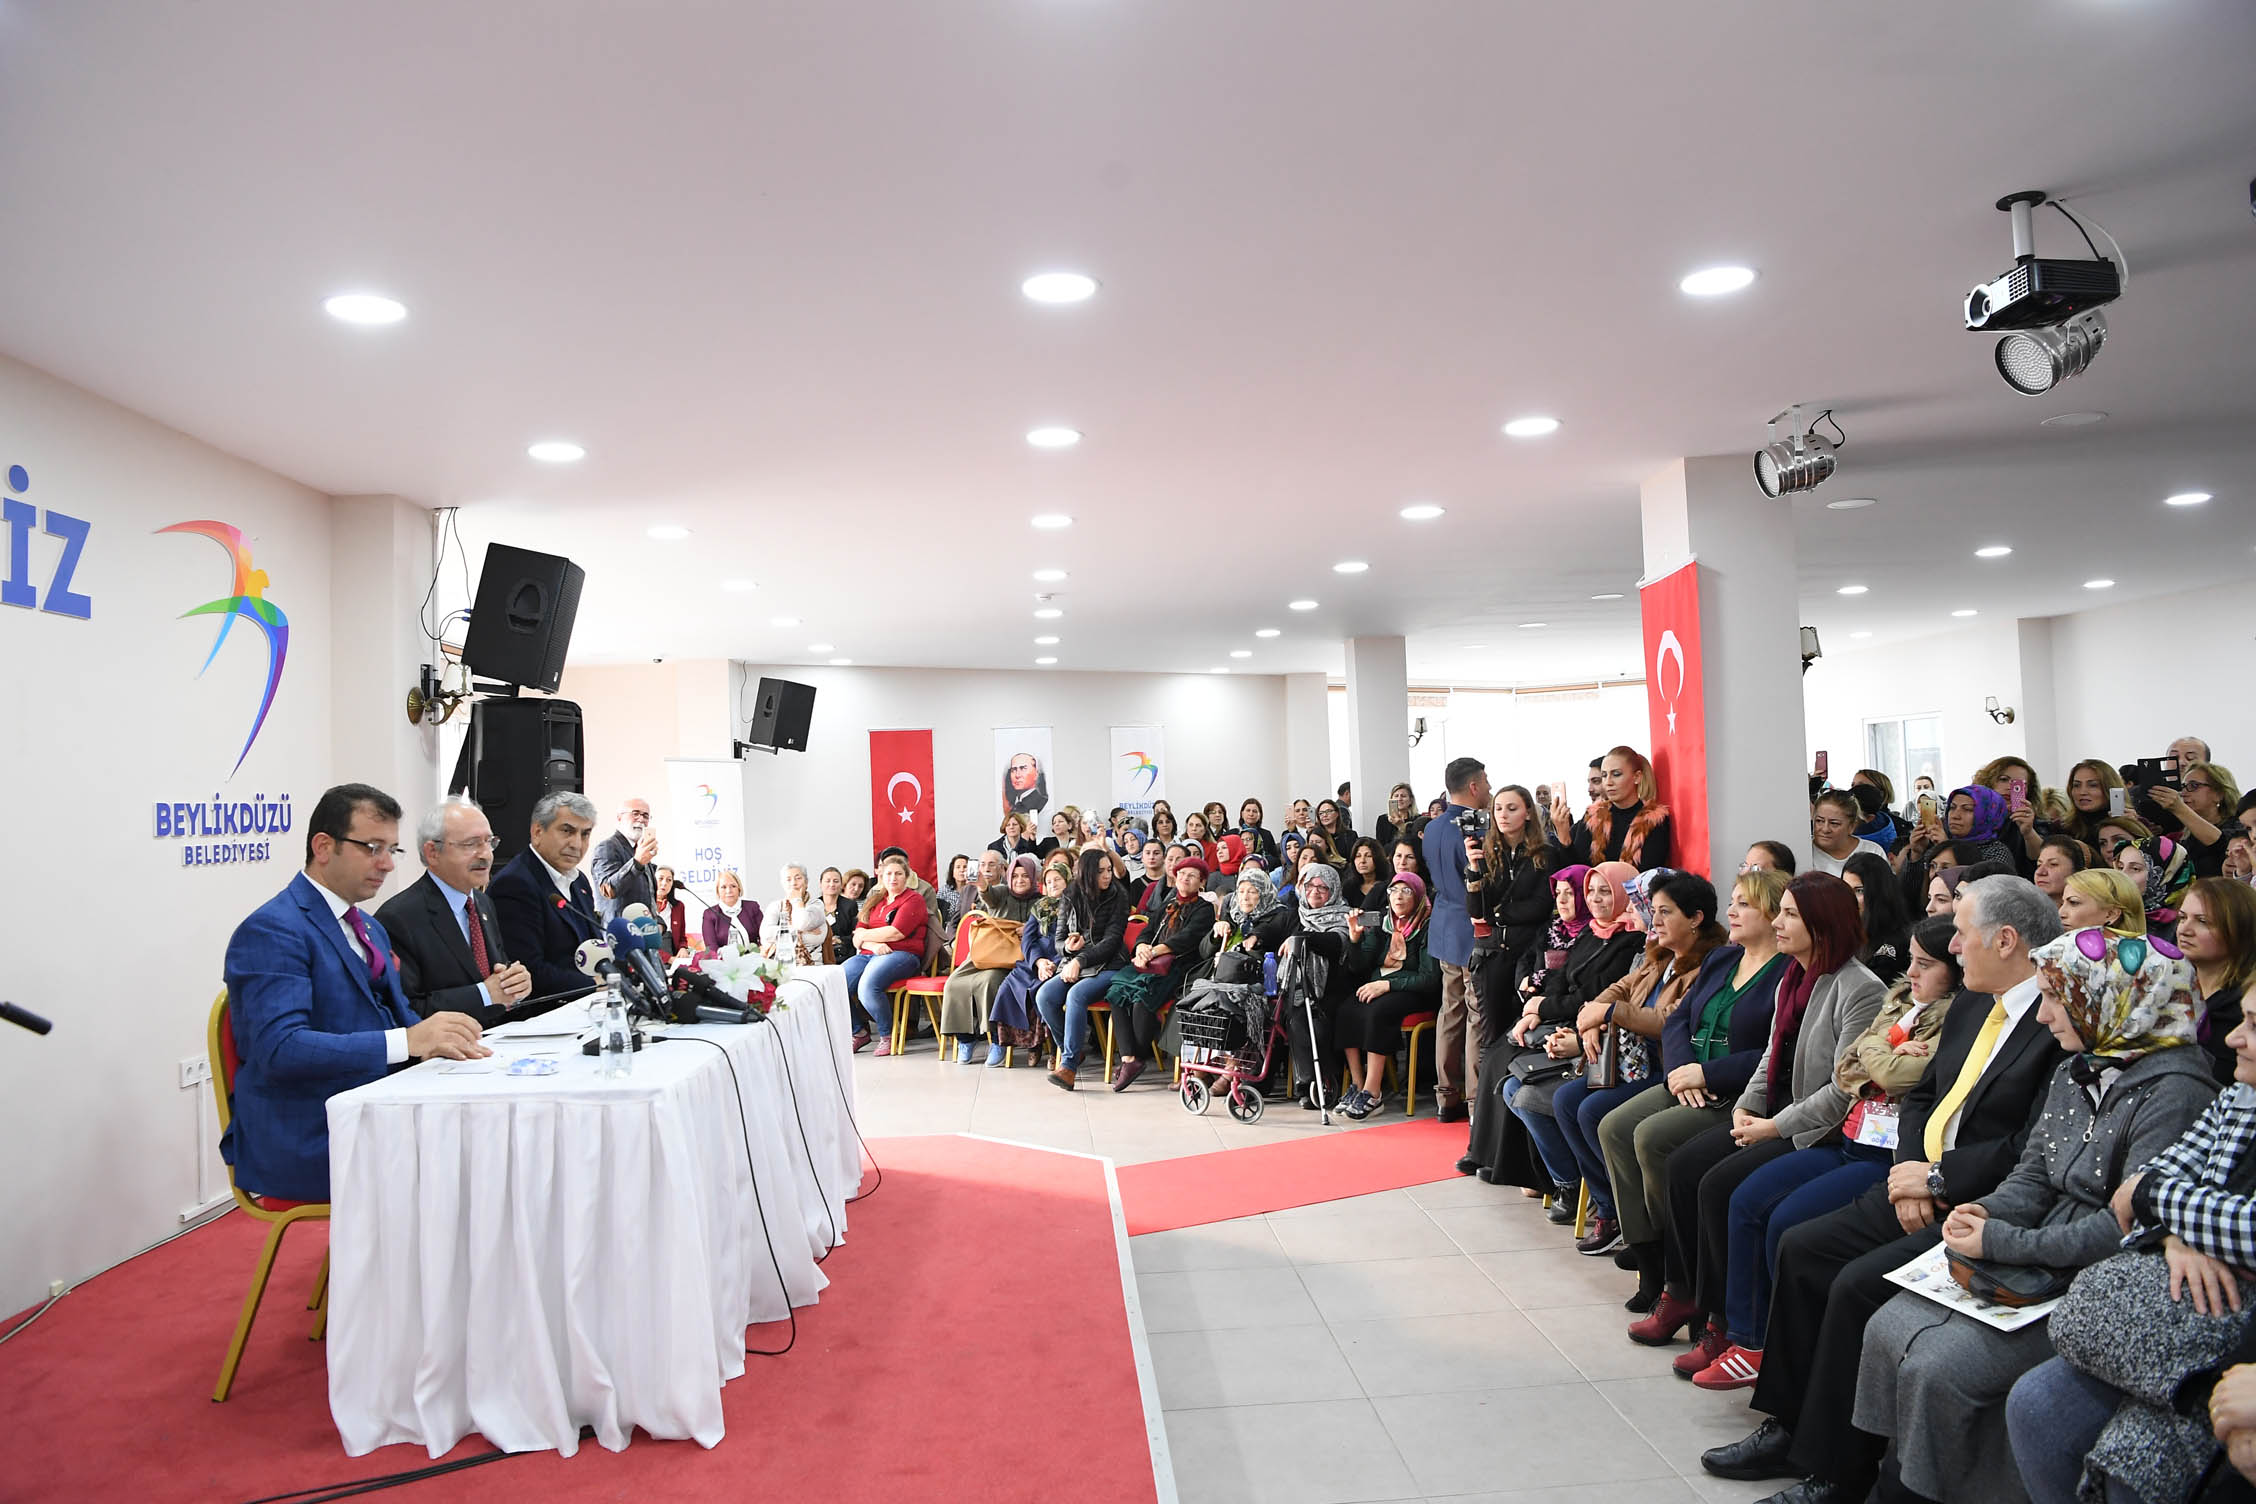 Kılıçdaroğlu, Gürpınar'da kadınlarla bir araya geldi 25